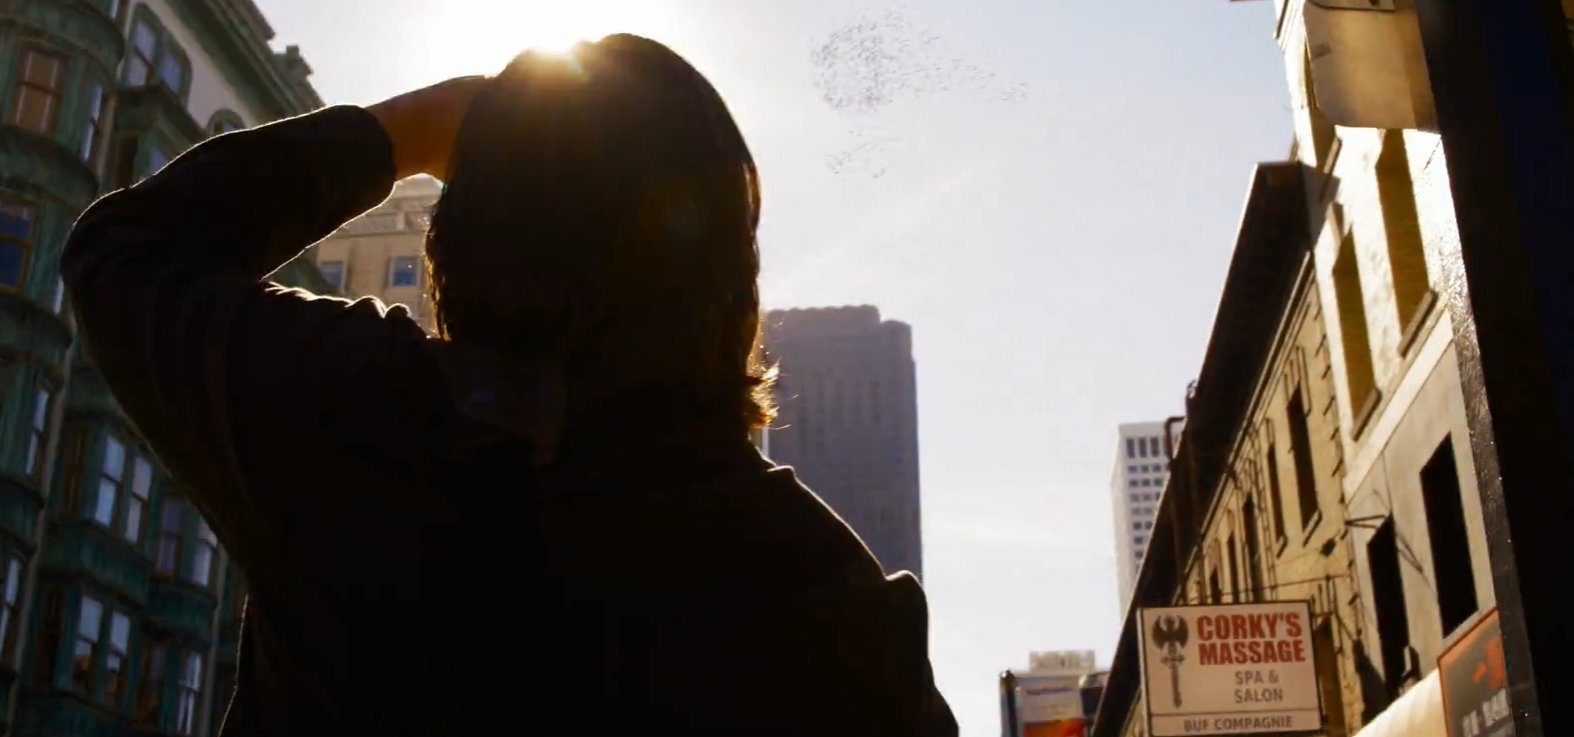 Первые кадры фильма «Матрица 4: Воскрешение» показали Киану Ривза в роли Нео